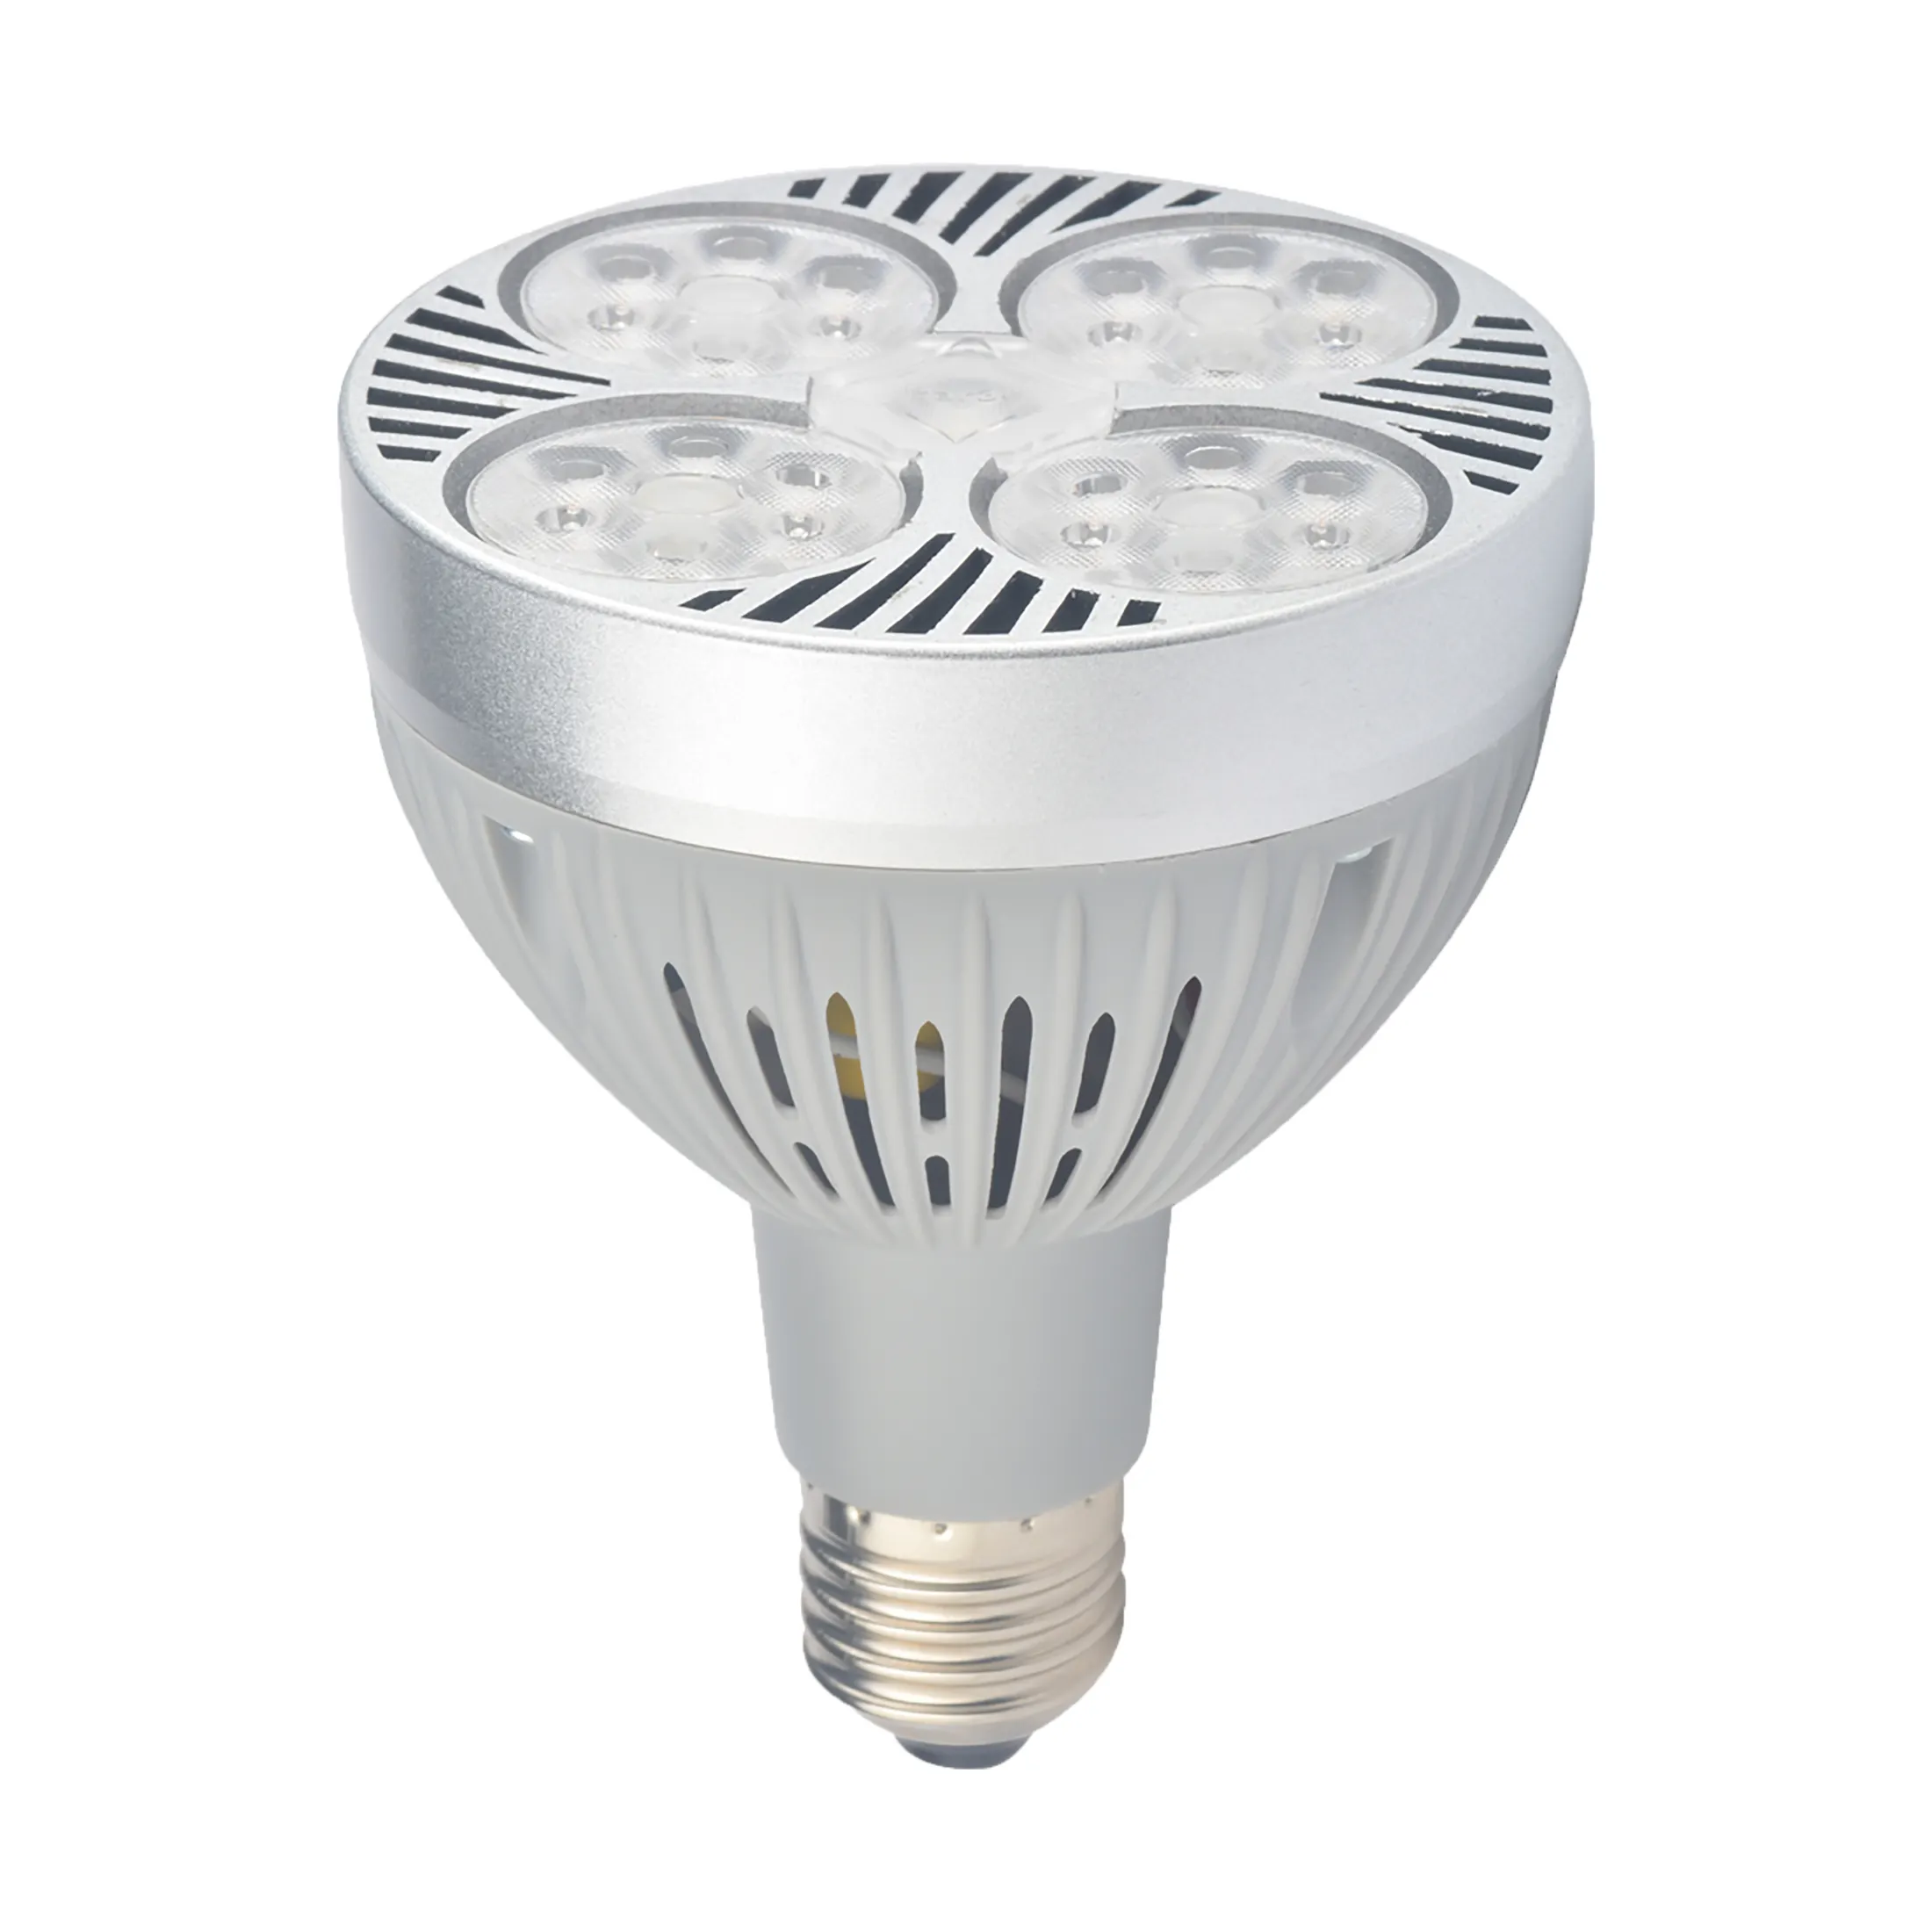 JHOW P3635 חדש לגמרי 35w LED מנורת Par30 15/24 תואר עמיד למים IP20 PAR30 Led ספוט אור